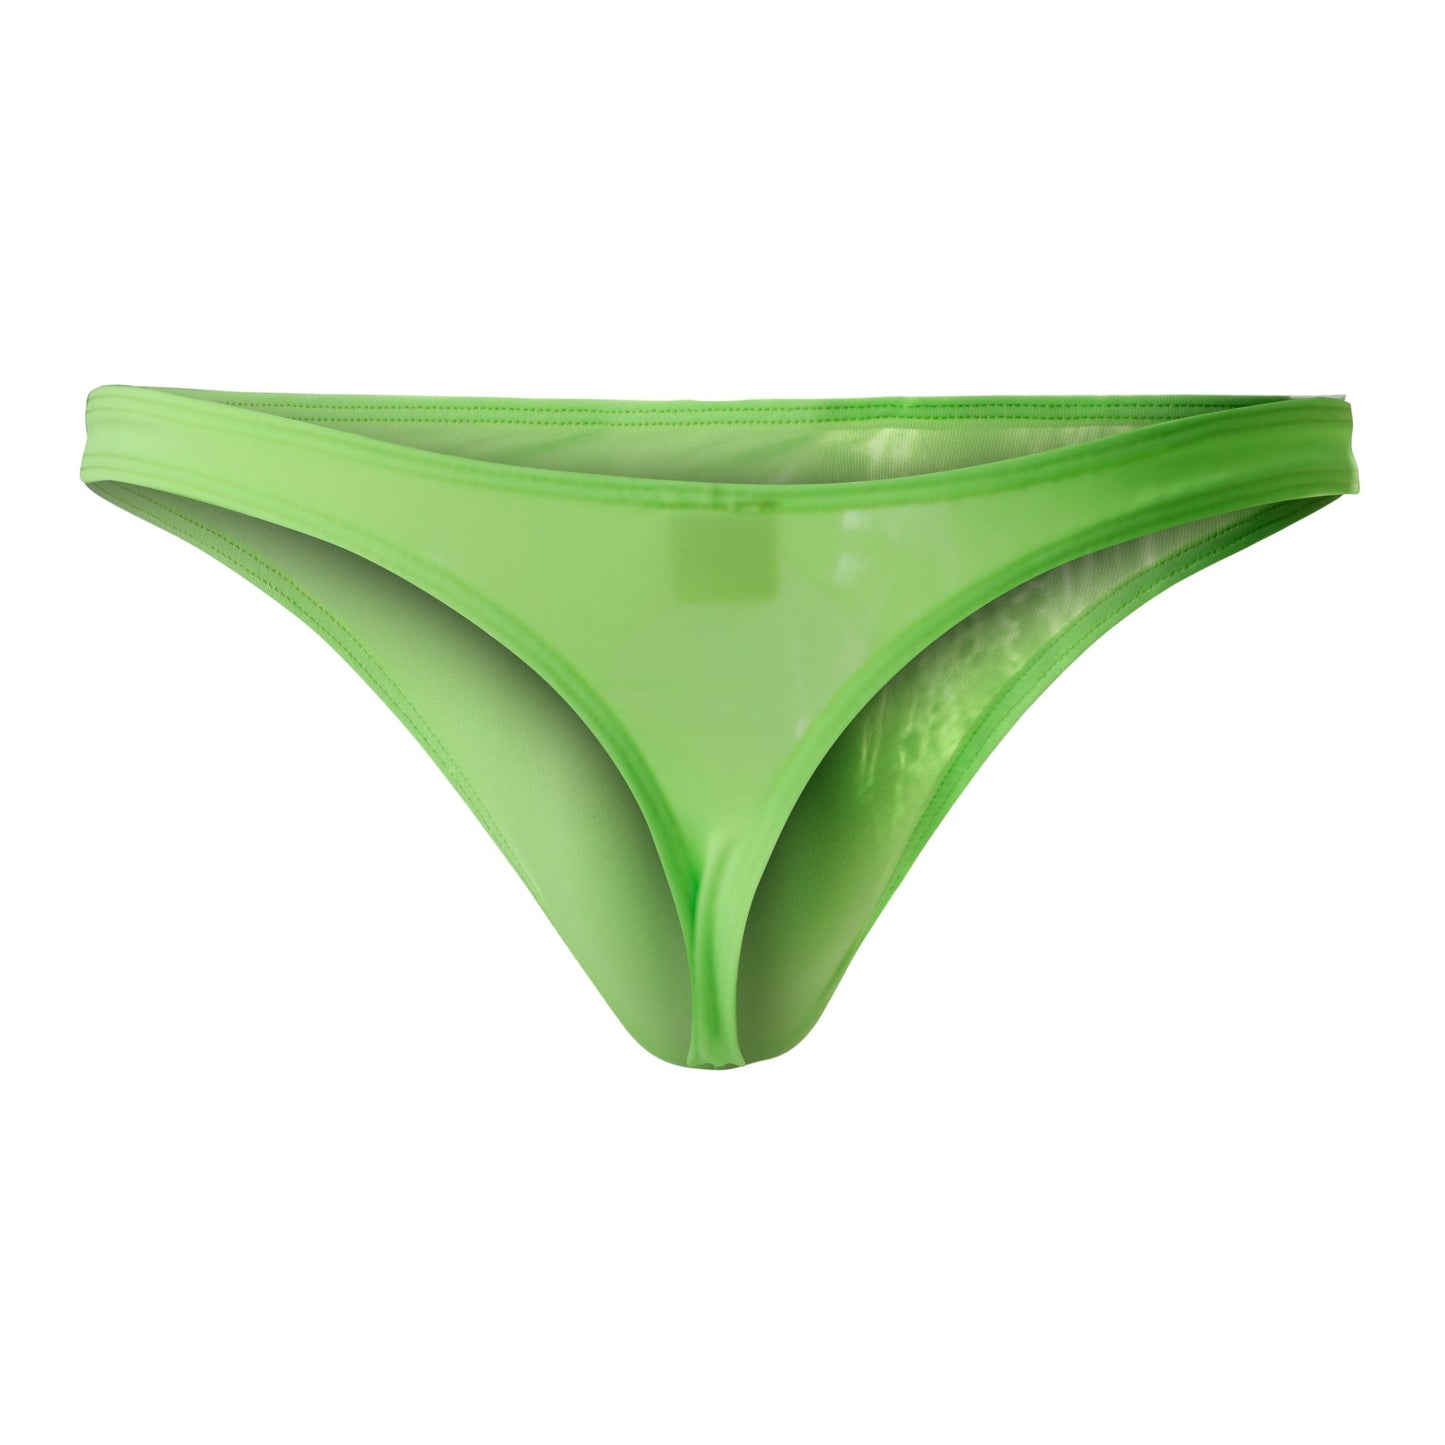 CUT4MEN - C4M03 - Thong Men Underwear - Neon Green - 4 Sizes - 1 Piece